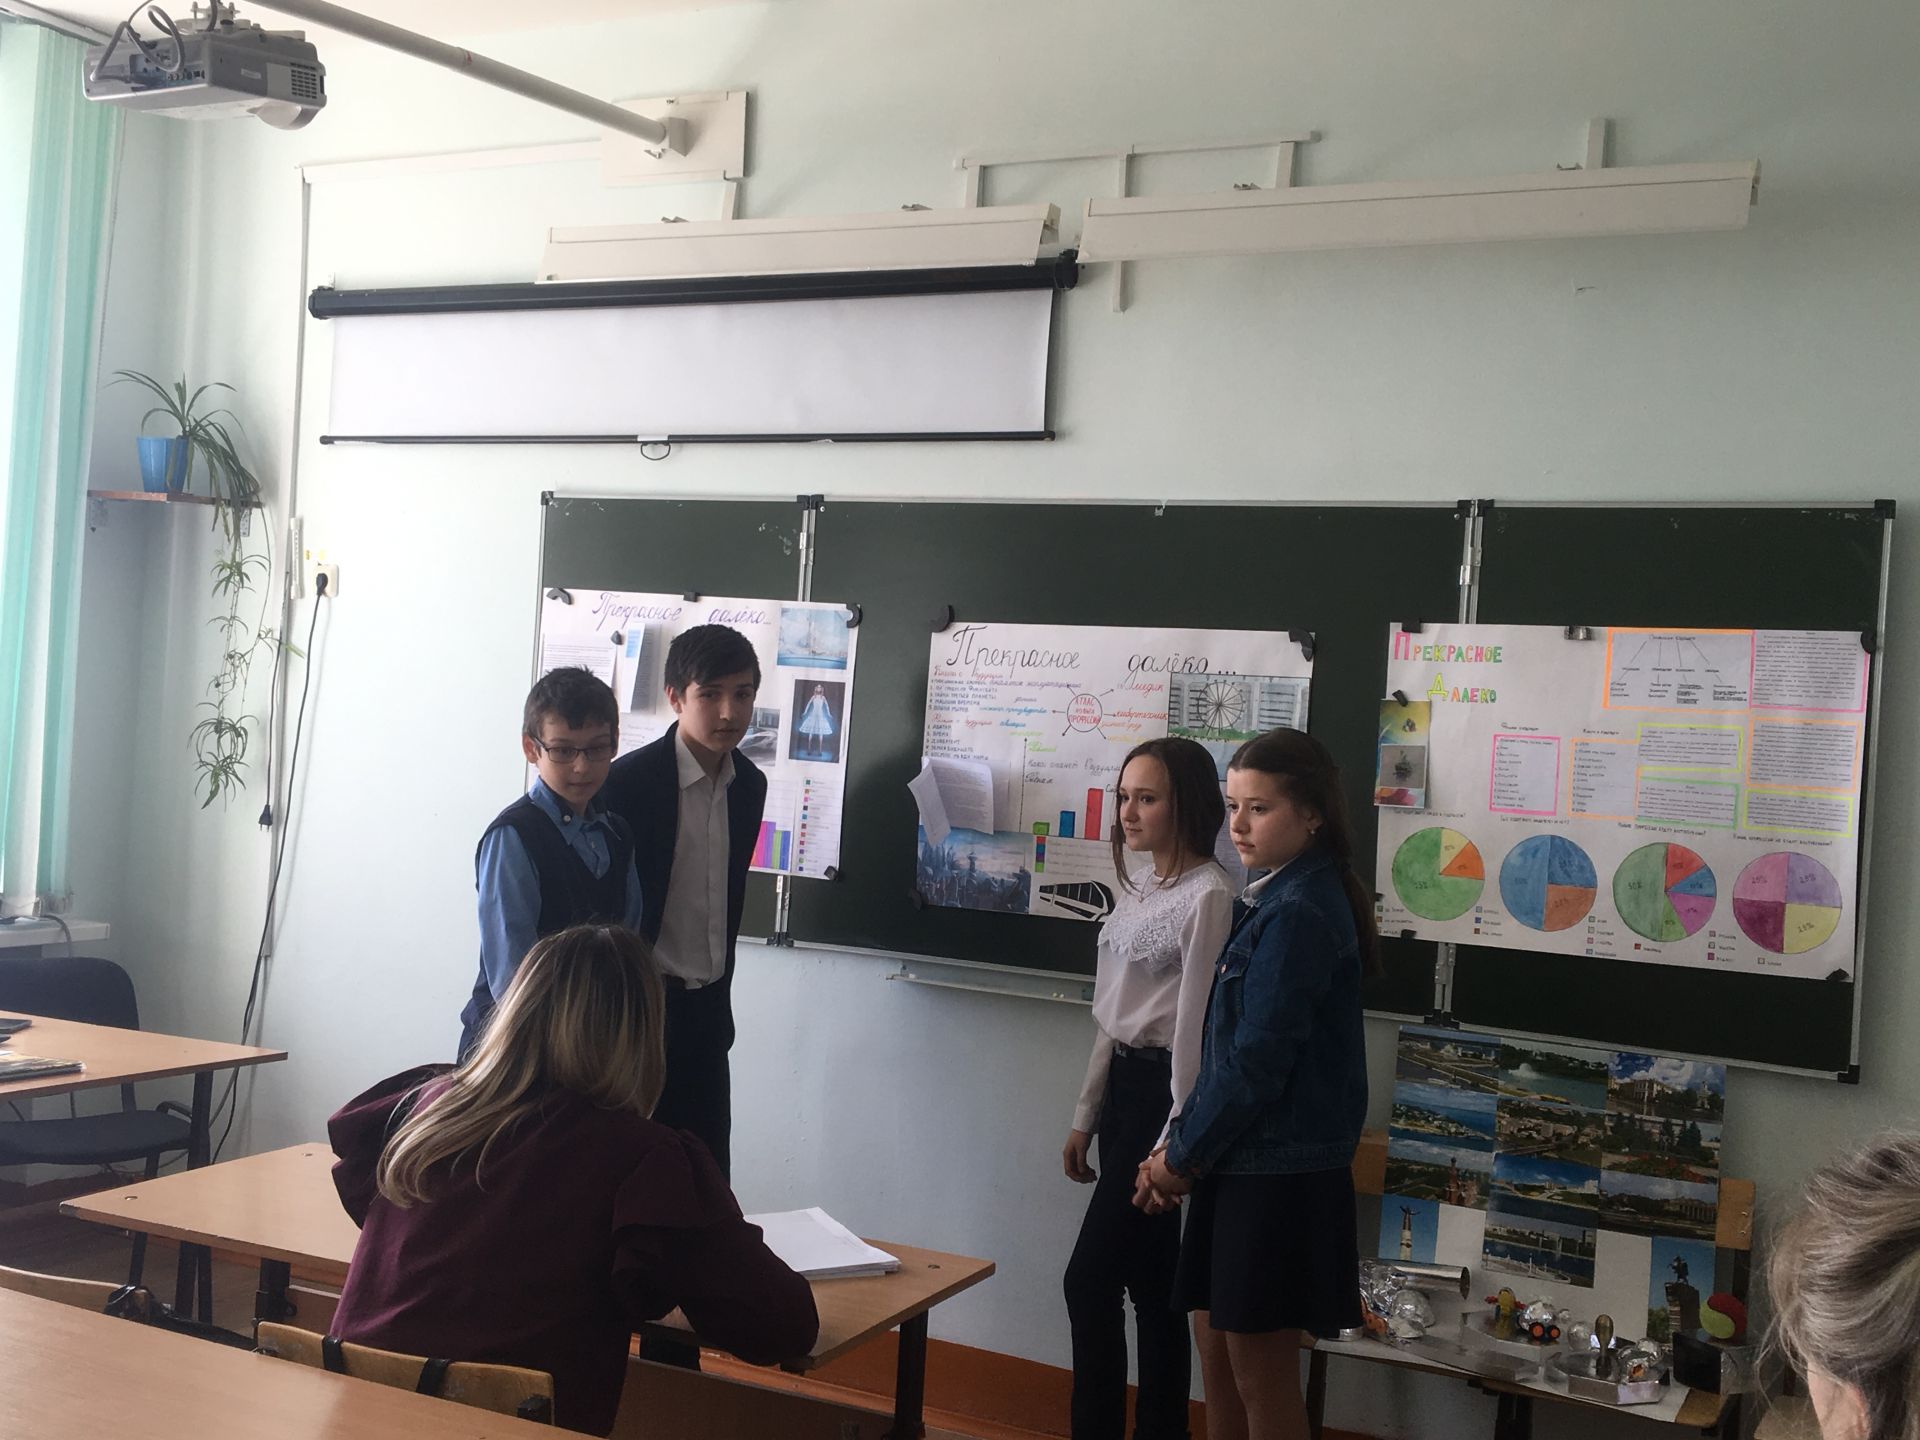 Будущее начинается сегодня,  - считают учащиеся Рыбно-Слободской гимназии